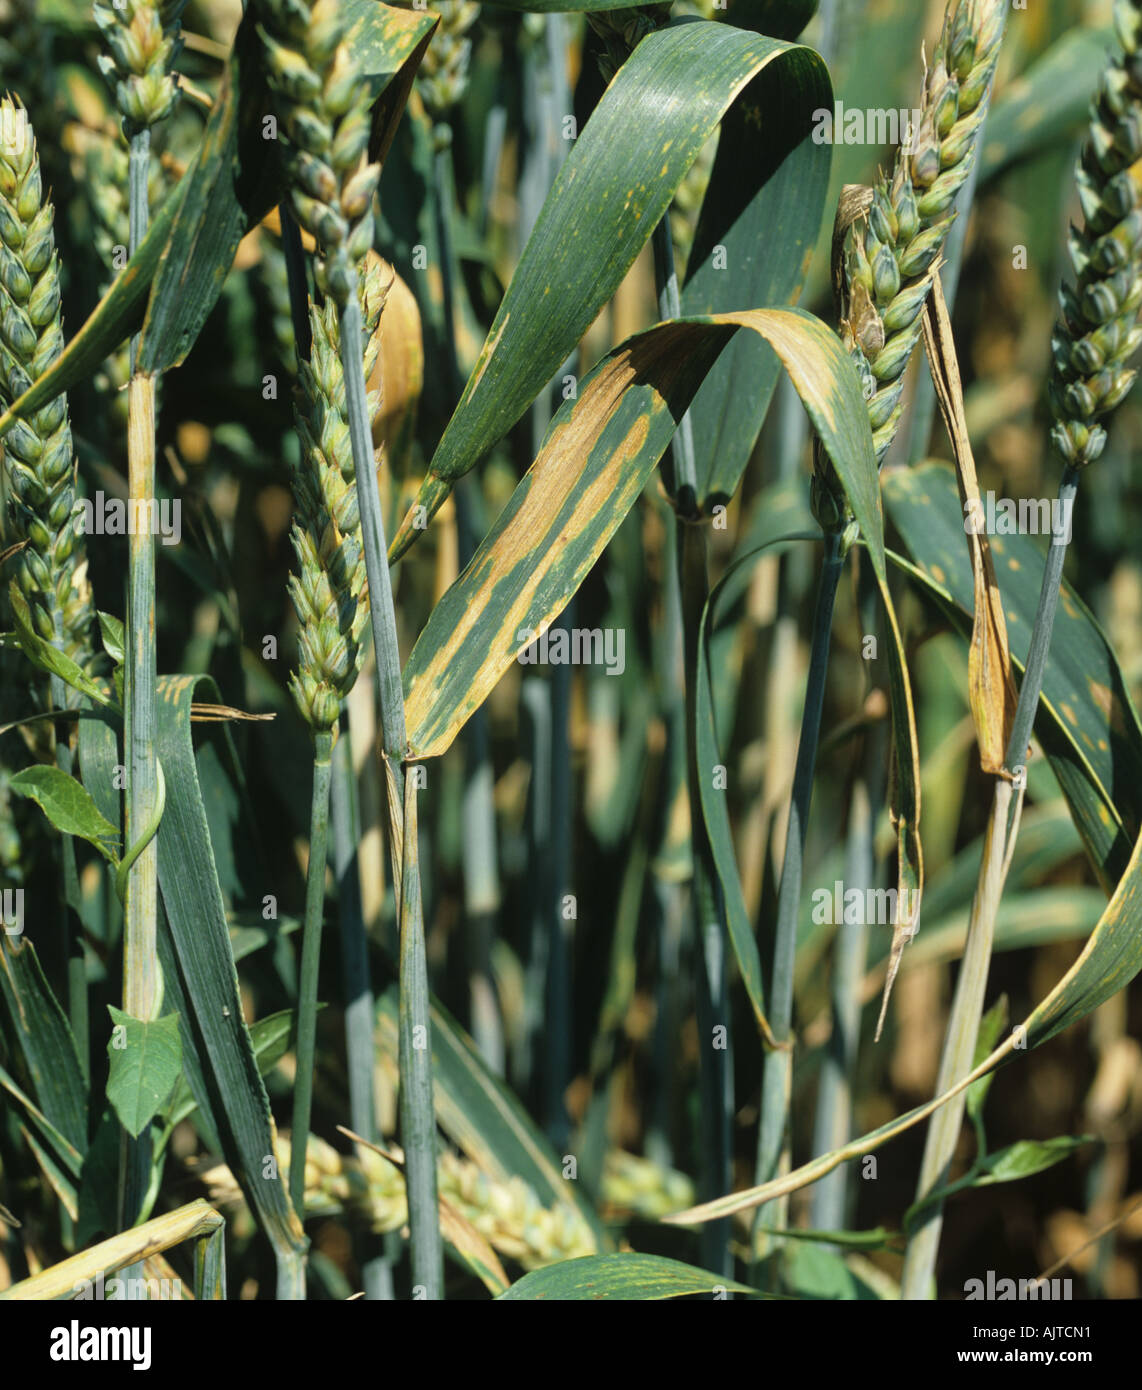 Septoria leaf spot (Phaeosphaeria nodorum) lesions on upper leaves of maturing wheat crop Stock Photo